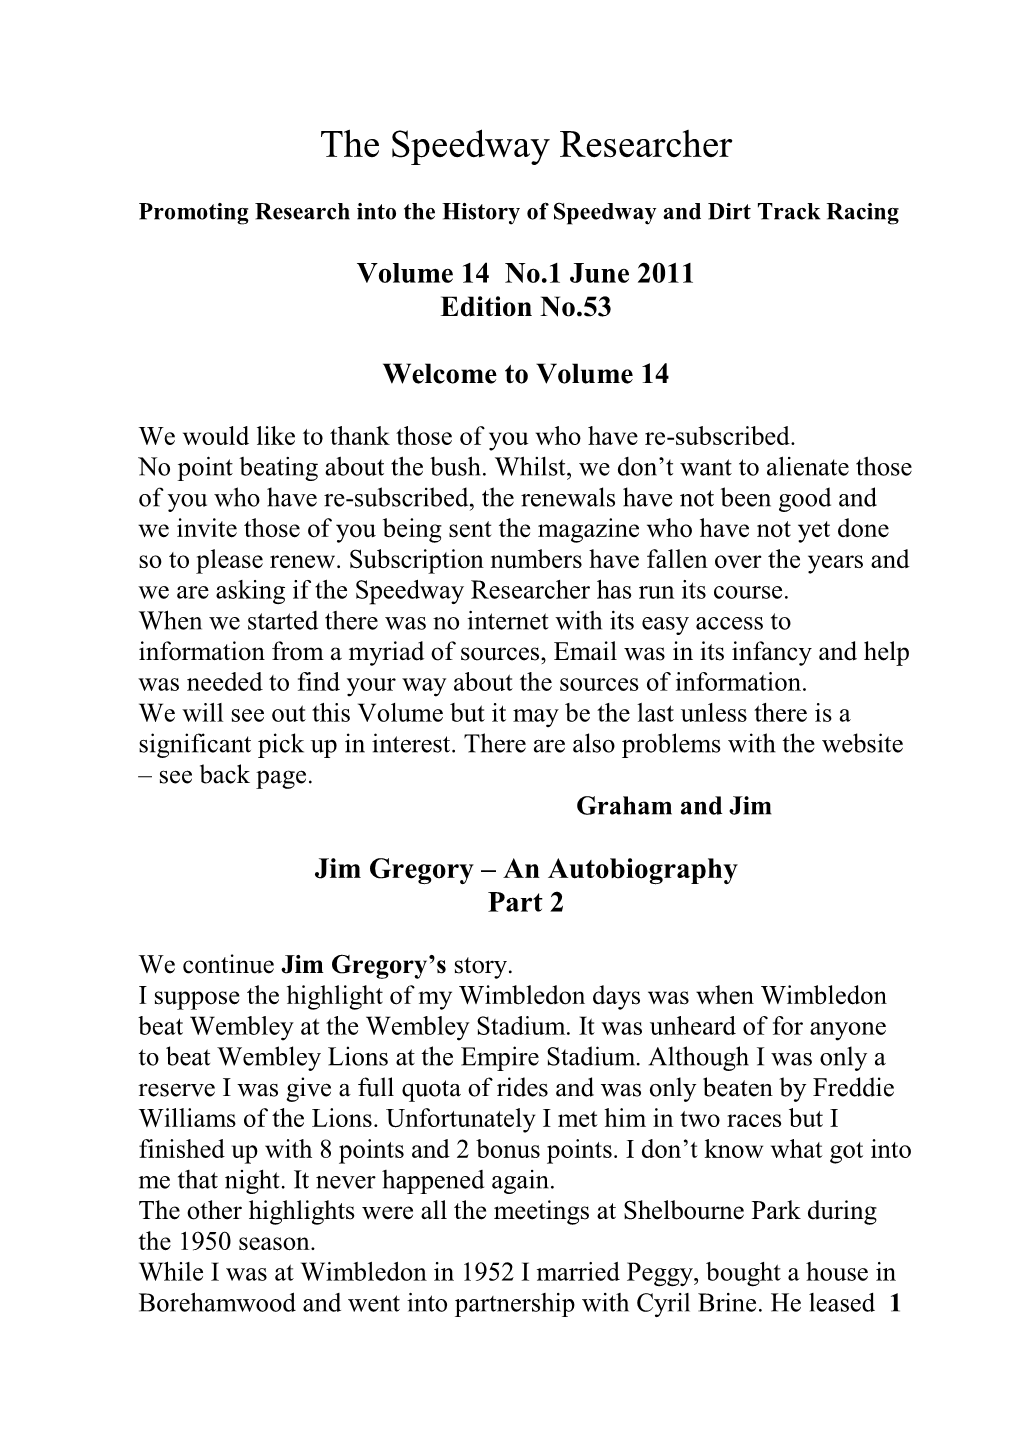 Volume 14 No.1 June 2011 Edition No.53